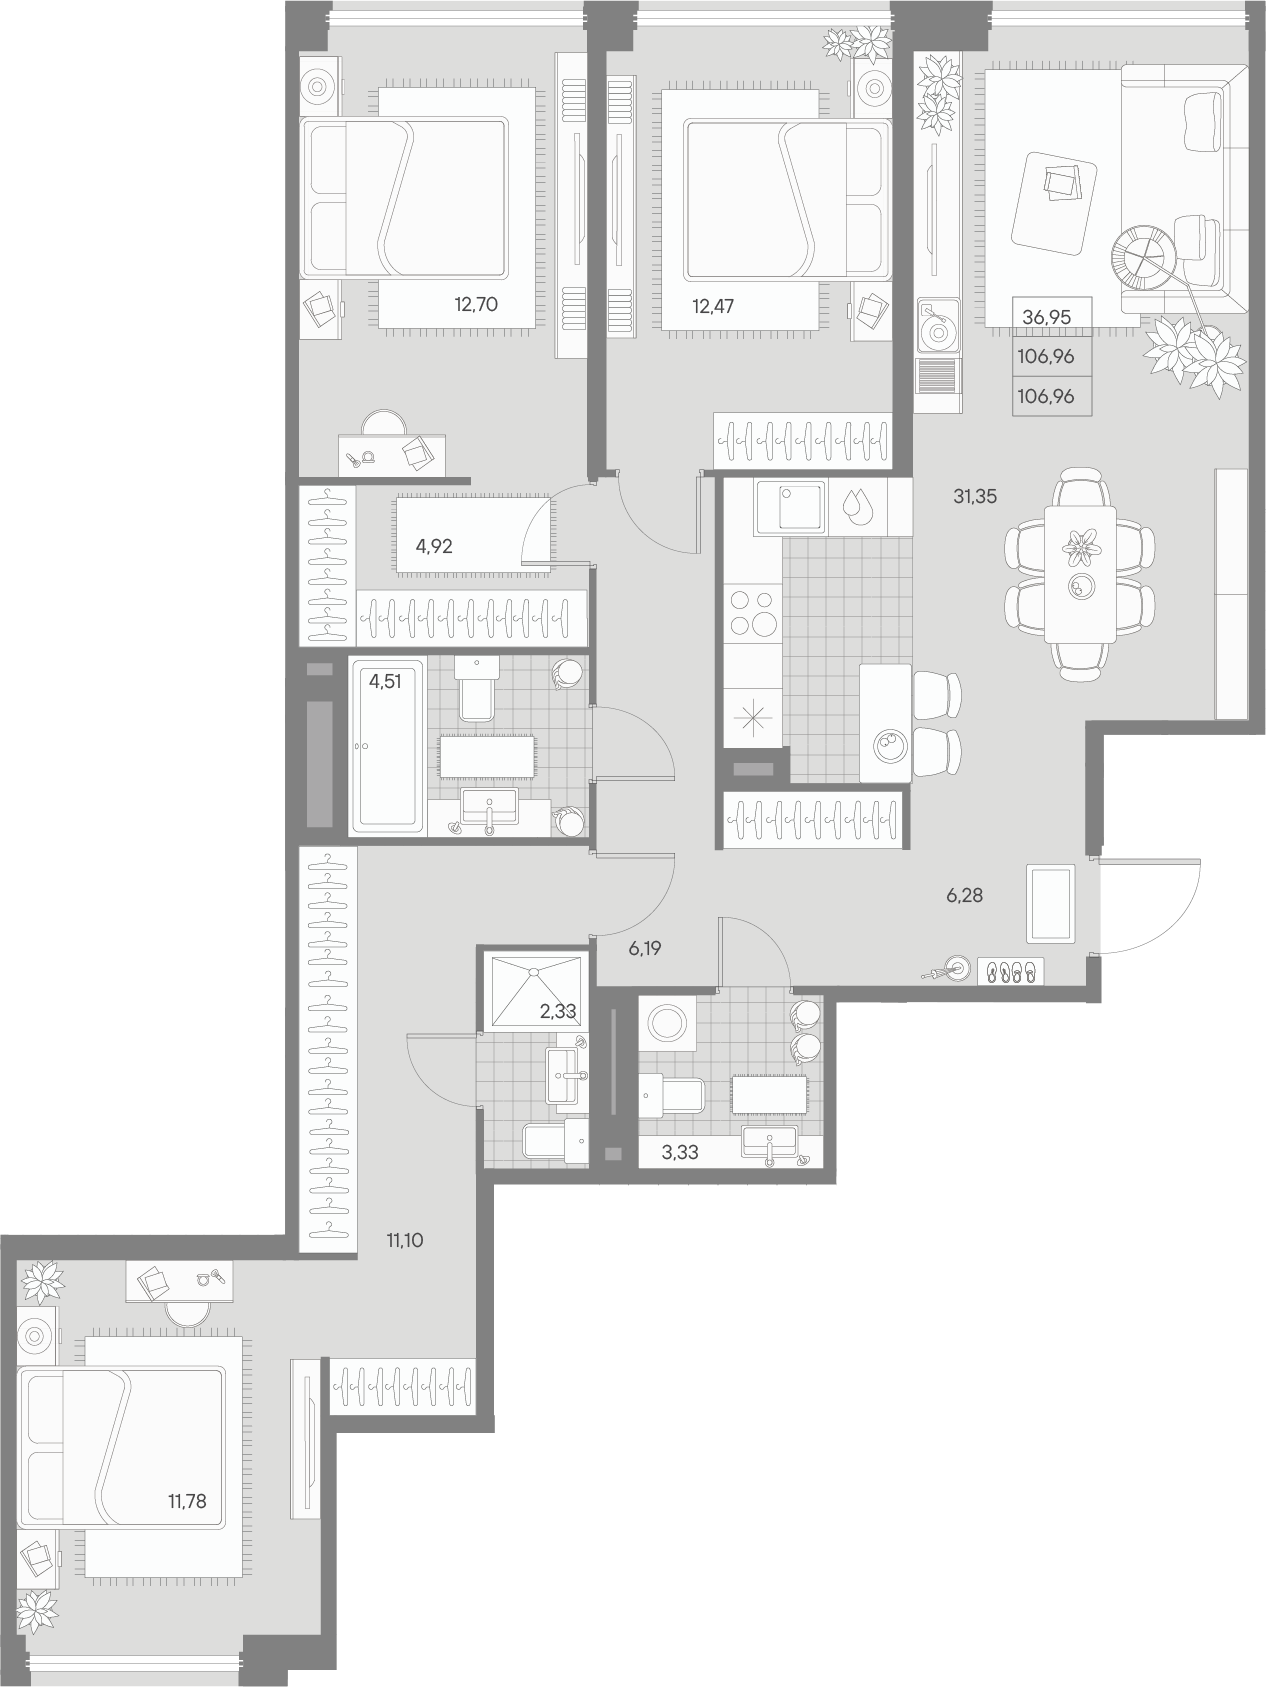 3-комнатная квартира  №194 в Avant: 106.96 м², этаж 6 - купить в Санкт-Петербурге